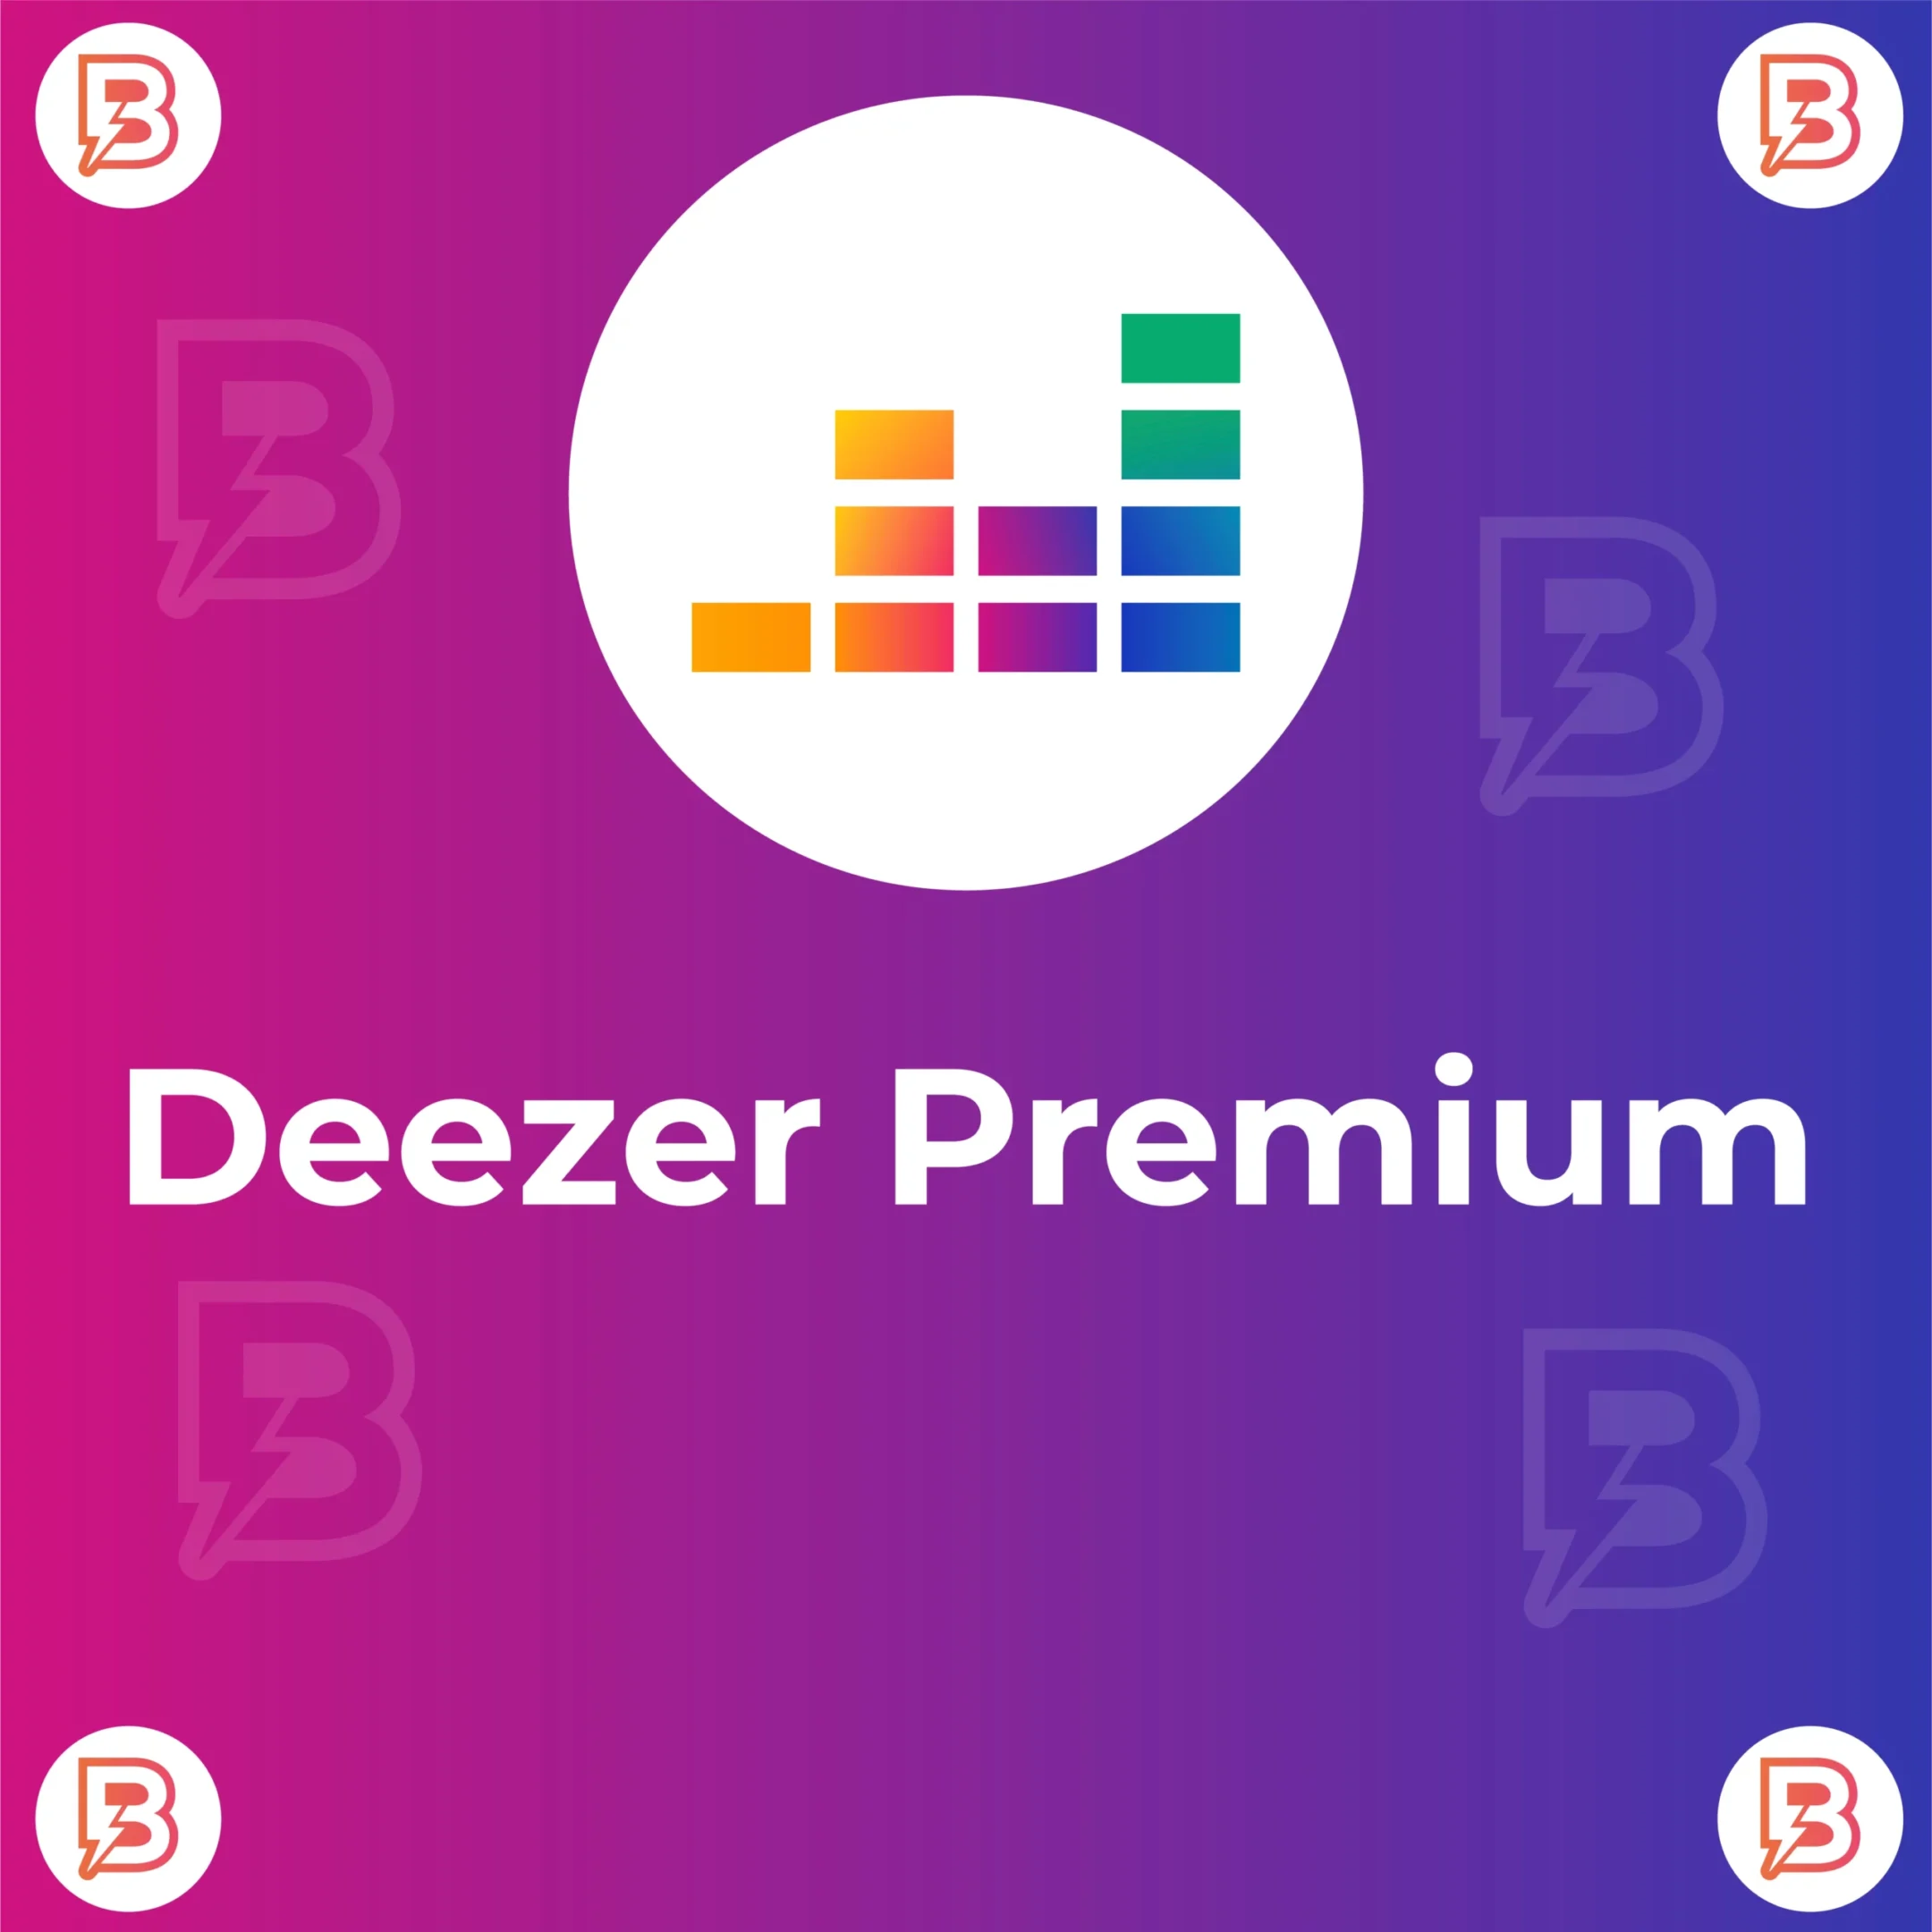 Buy Deezer Premium Account